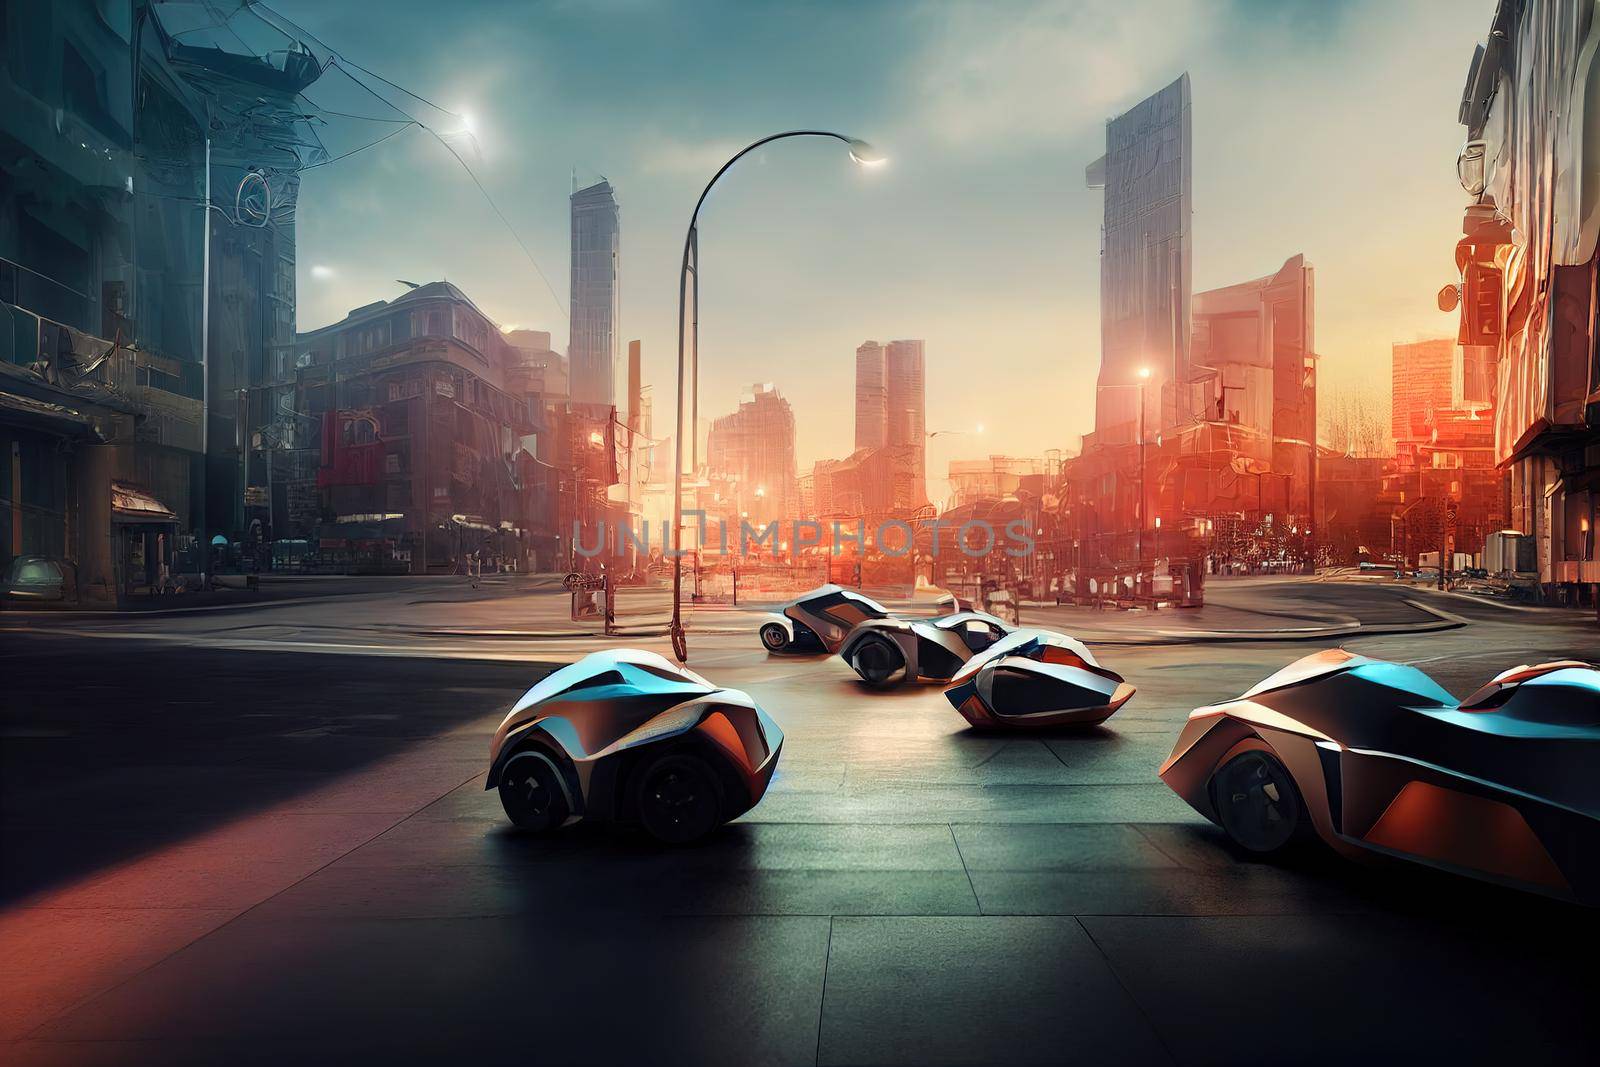 futuristic luxury machines in futuristic city environment by 2ragon